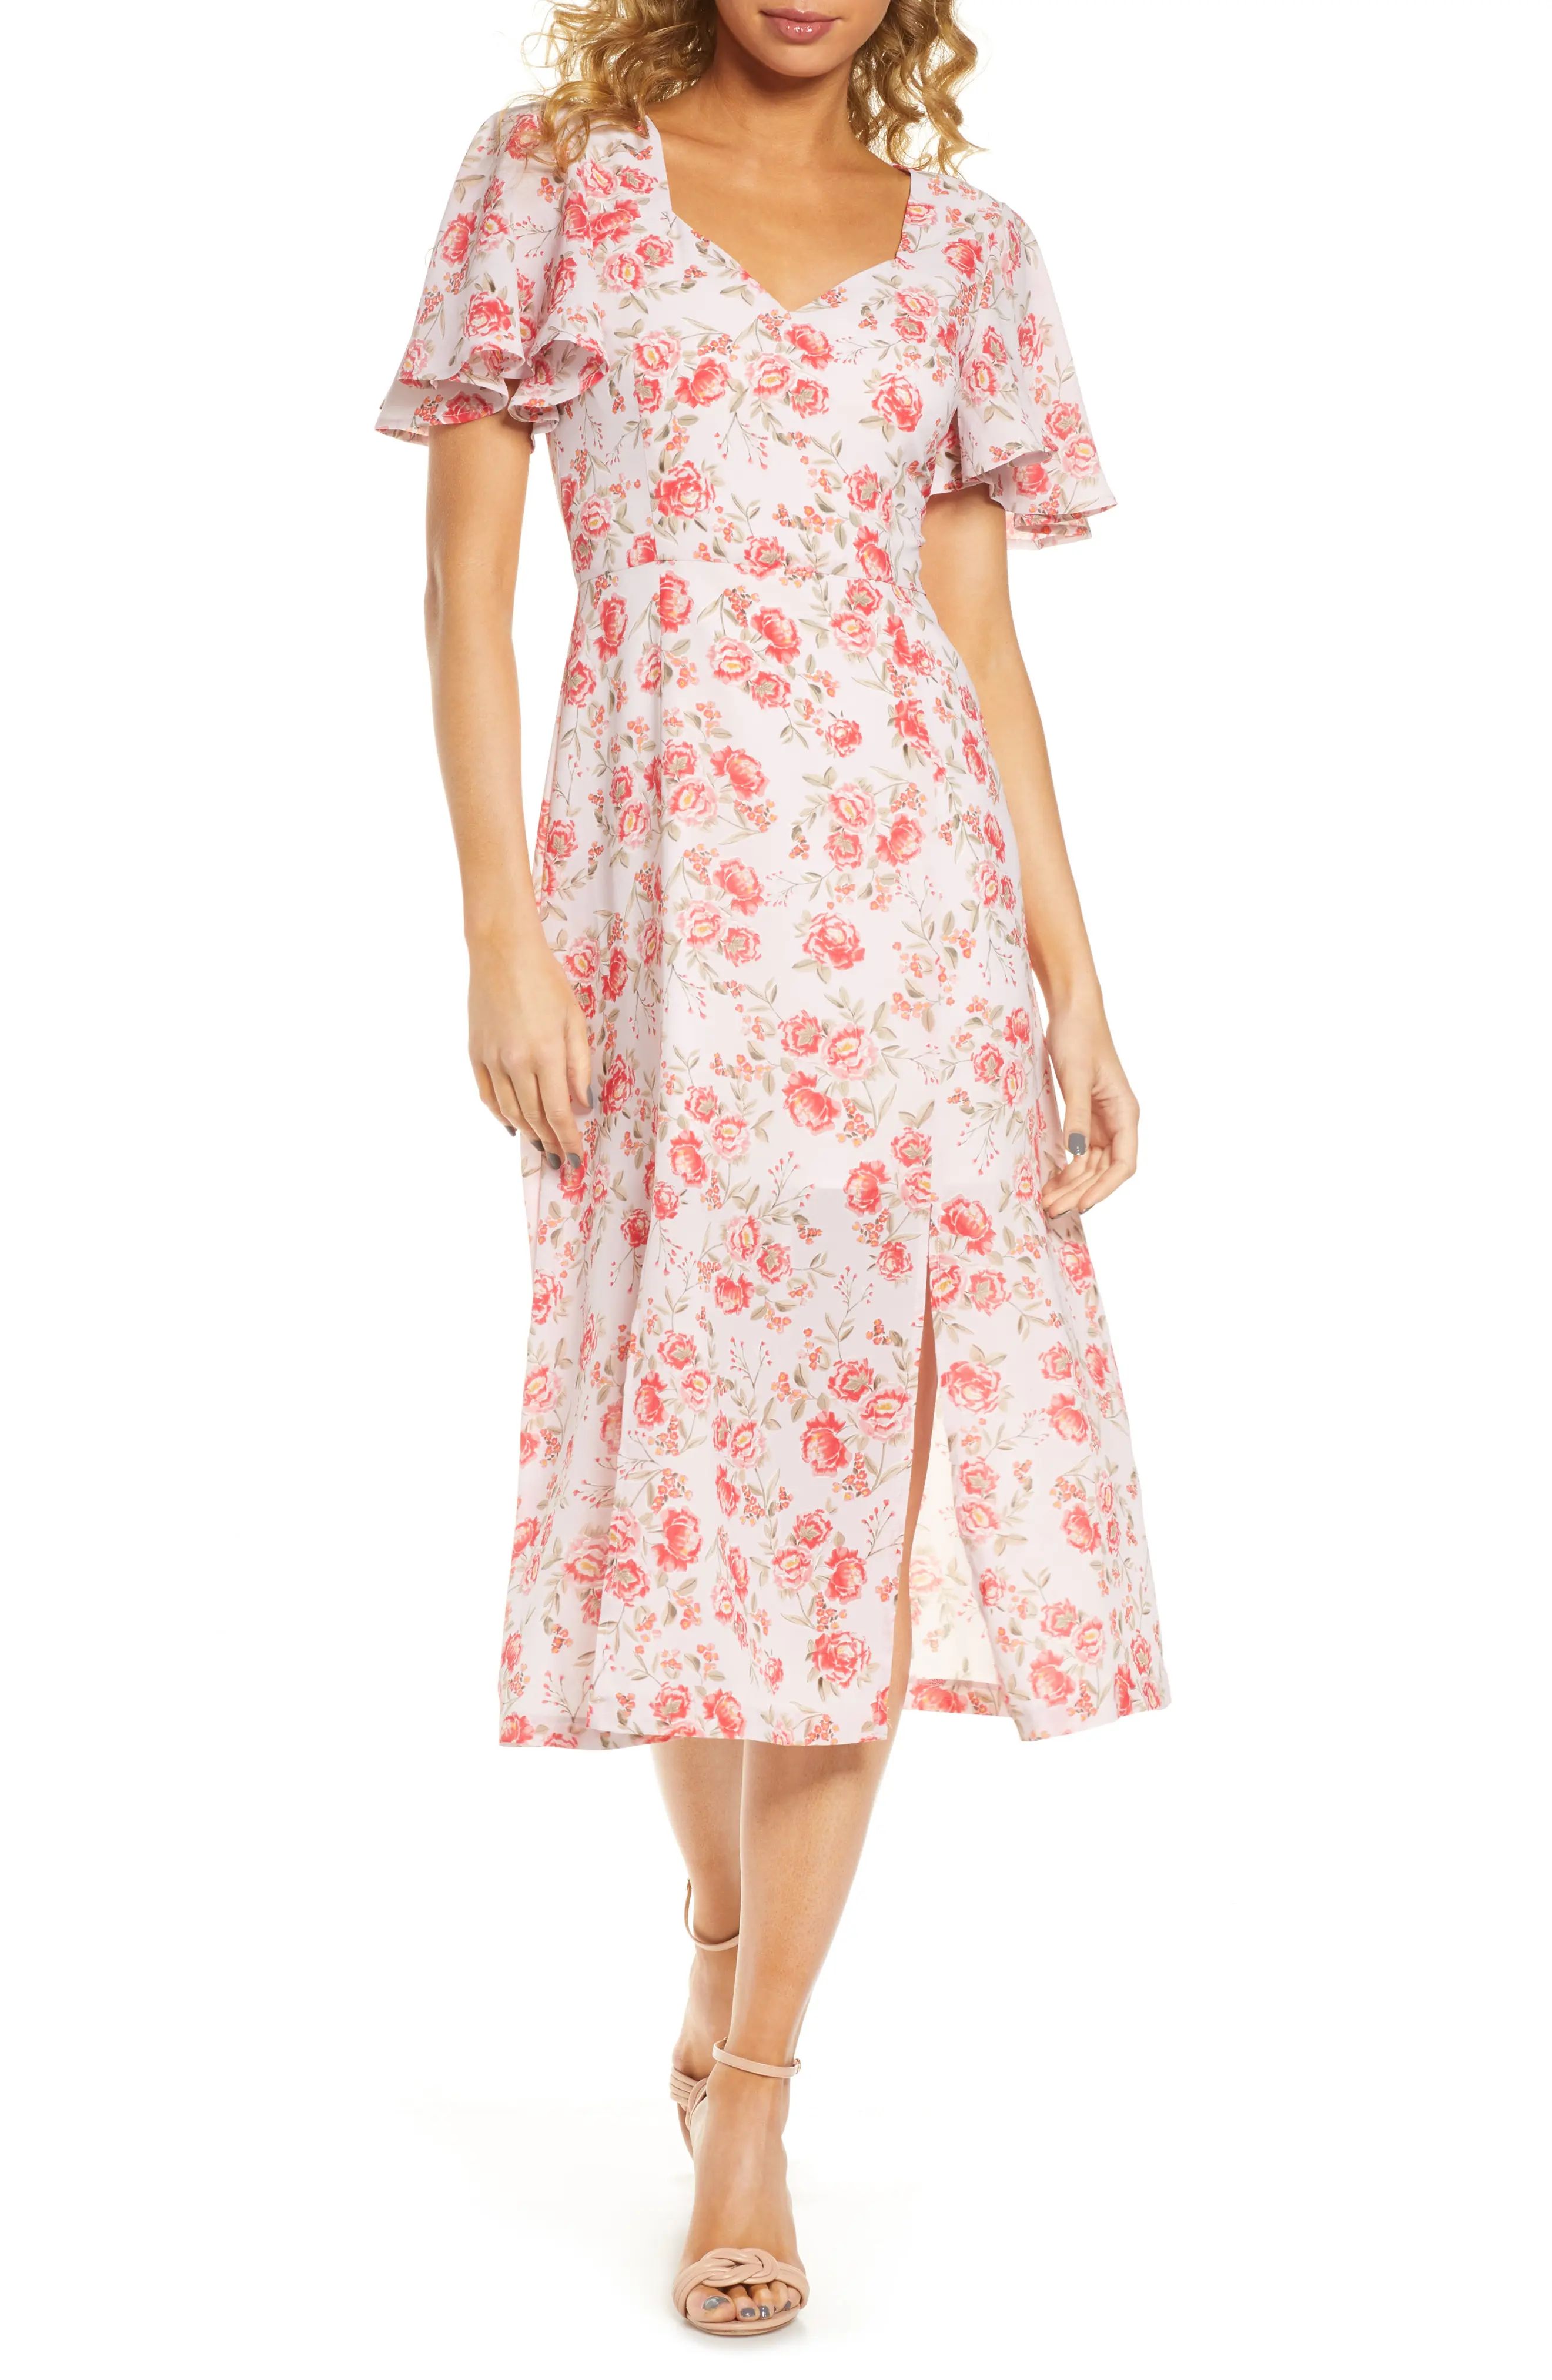 BB Dakota Endless Love Fairy Rose Dress at Nordstrom Rack | Hautelook